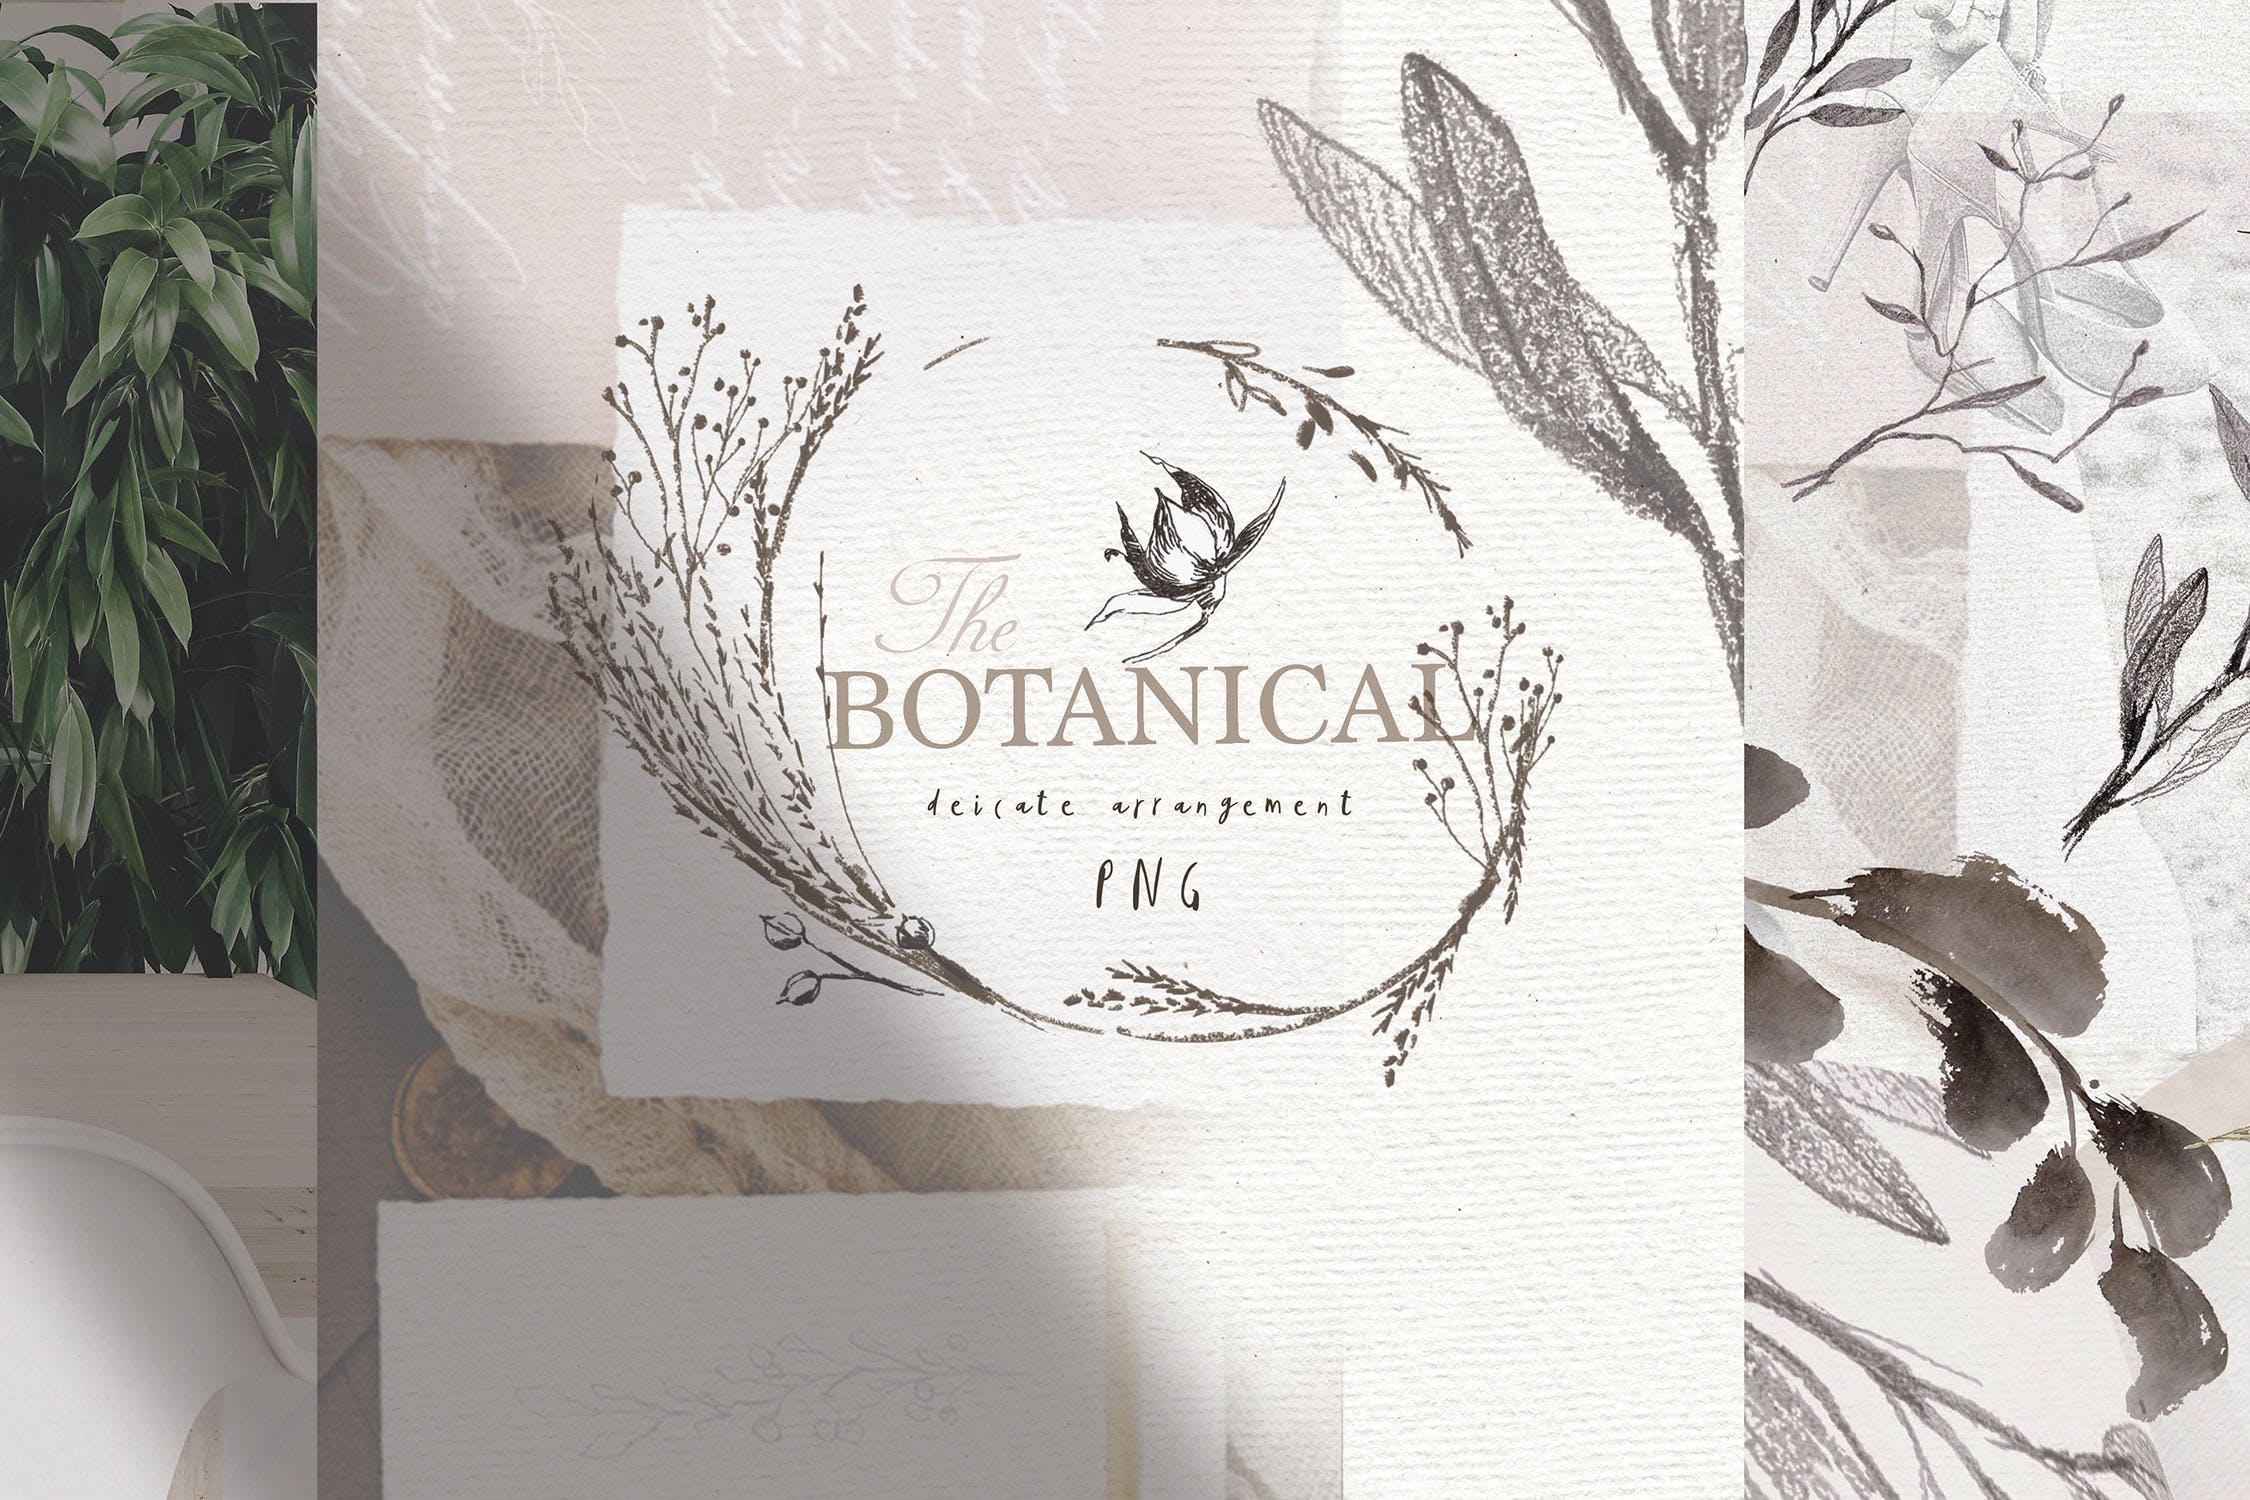 优雅风格植物Logo标志元素设计素材v3 BOTANICAL LOGO ELEMENTS vol.3插图(9)